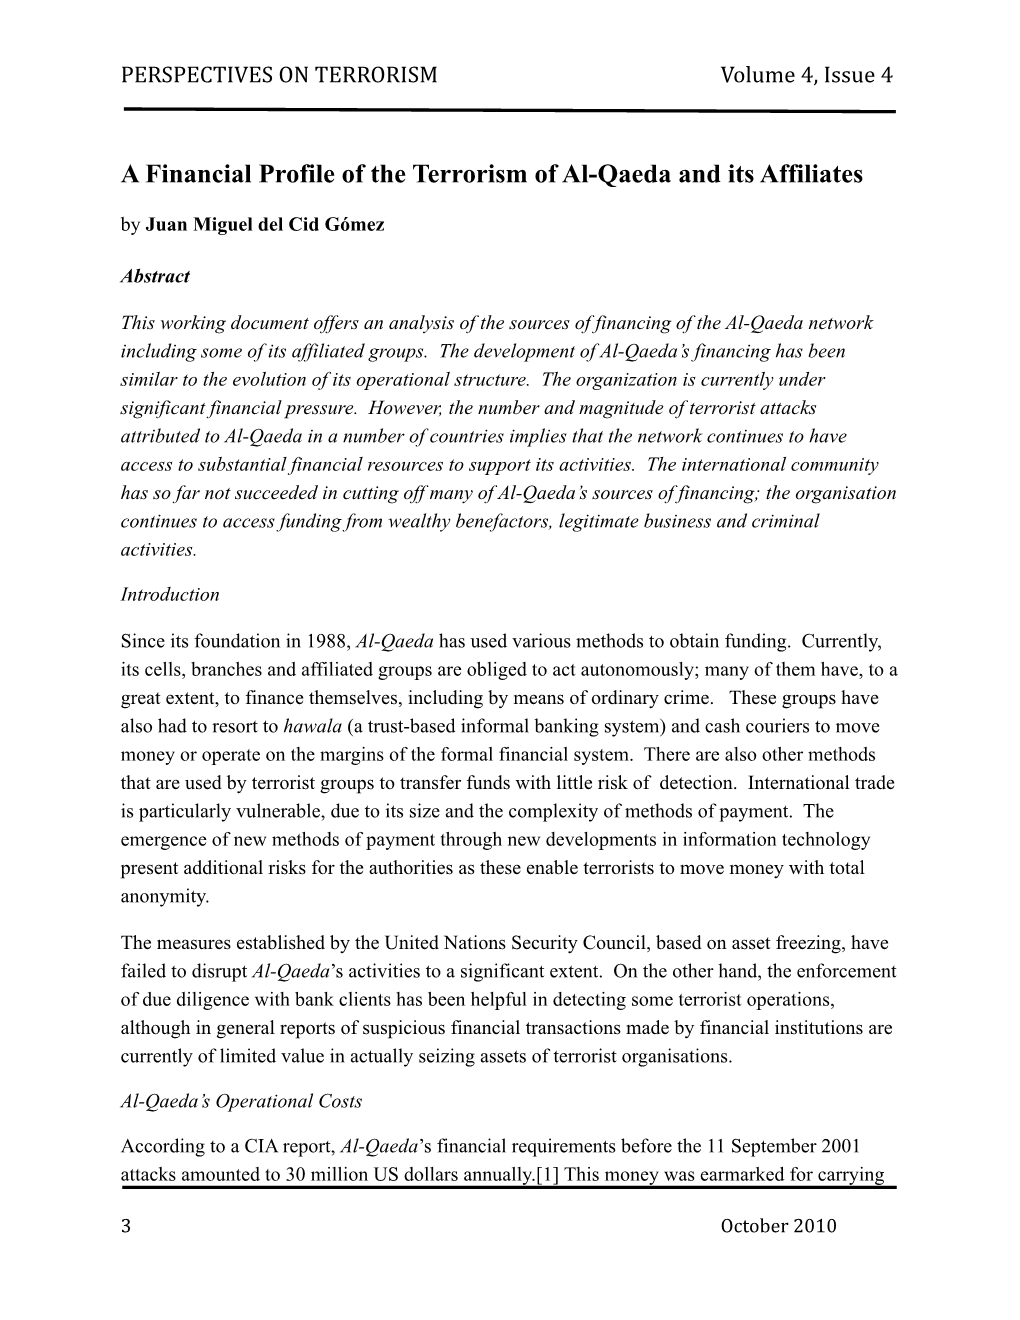 A Financial Profile of the Terrorism of Al-Qaeda and Its Affiliates by Juan Miguel Del Cid Gómez